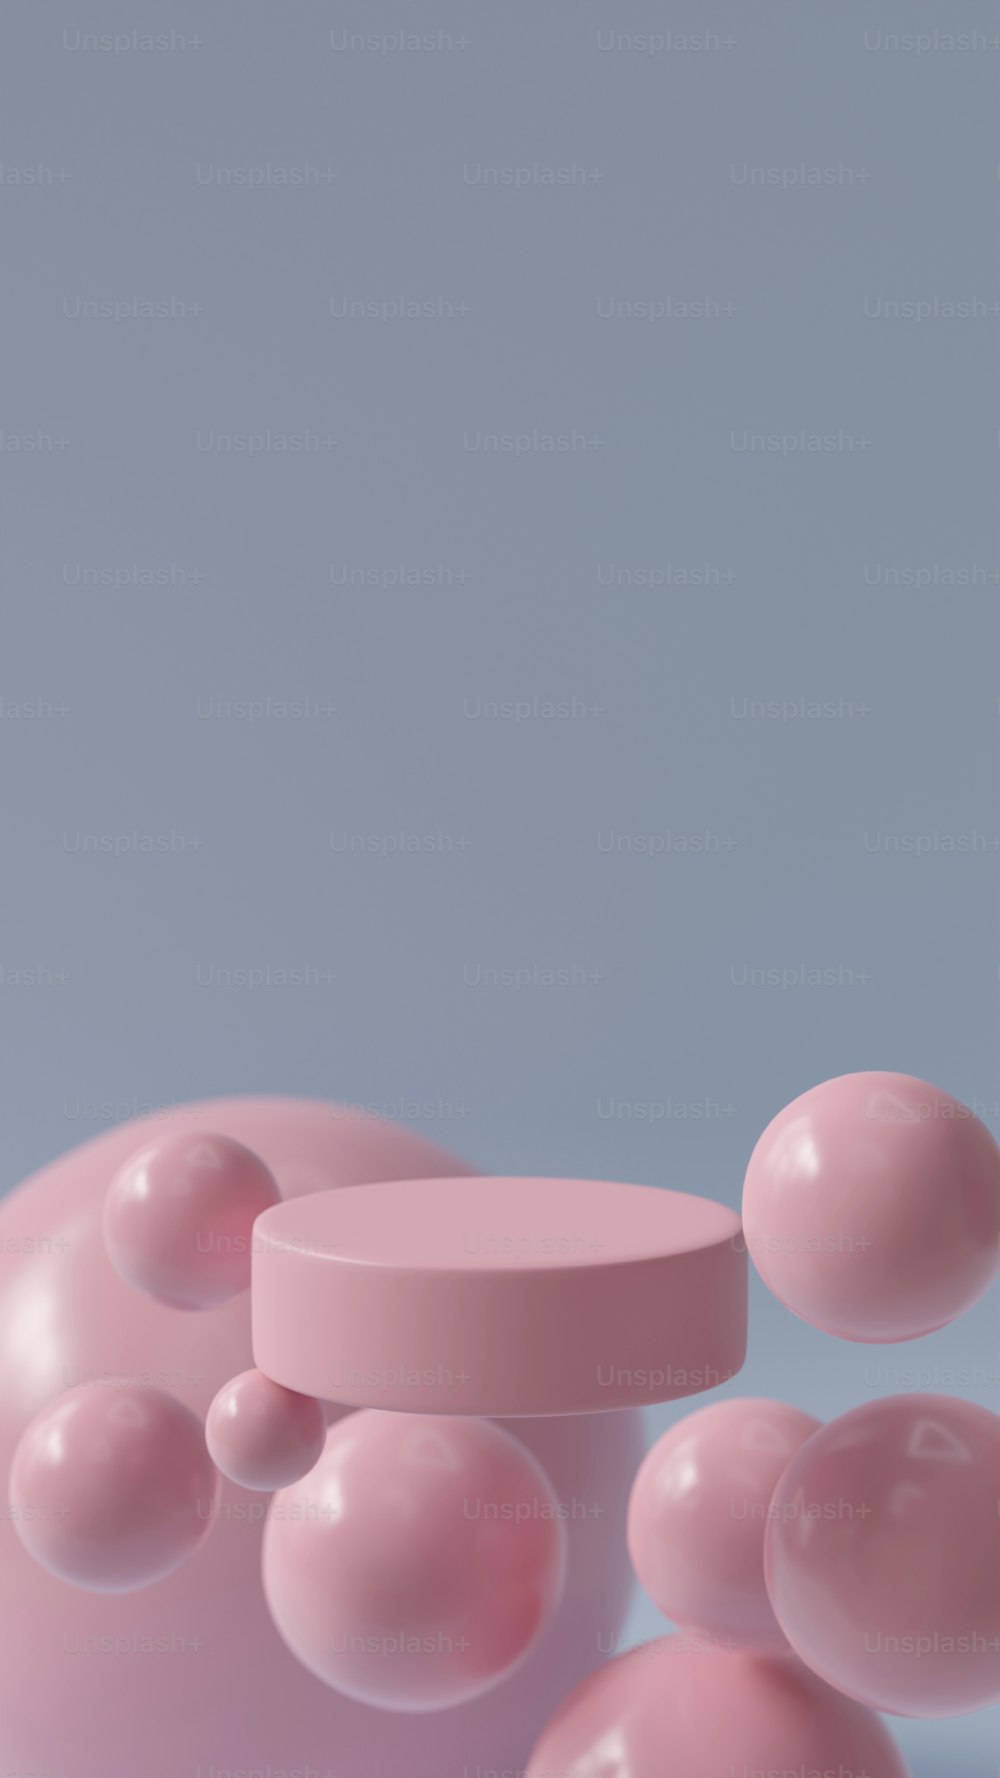 Un objeto rosa flota en el aire